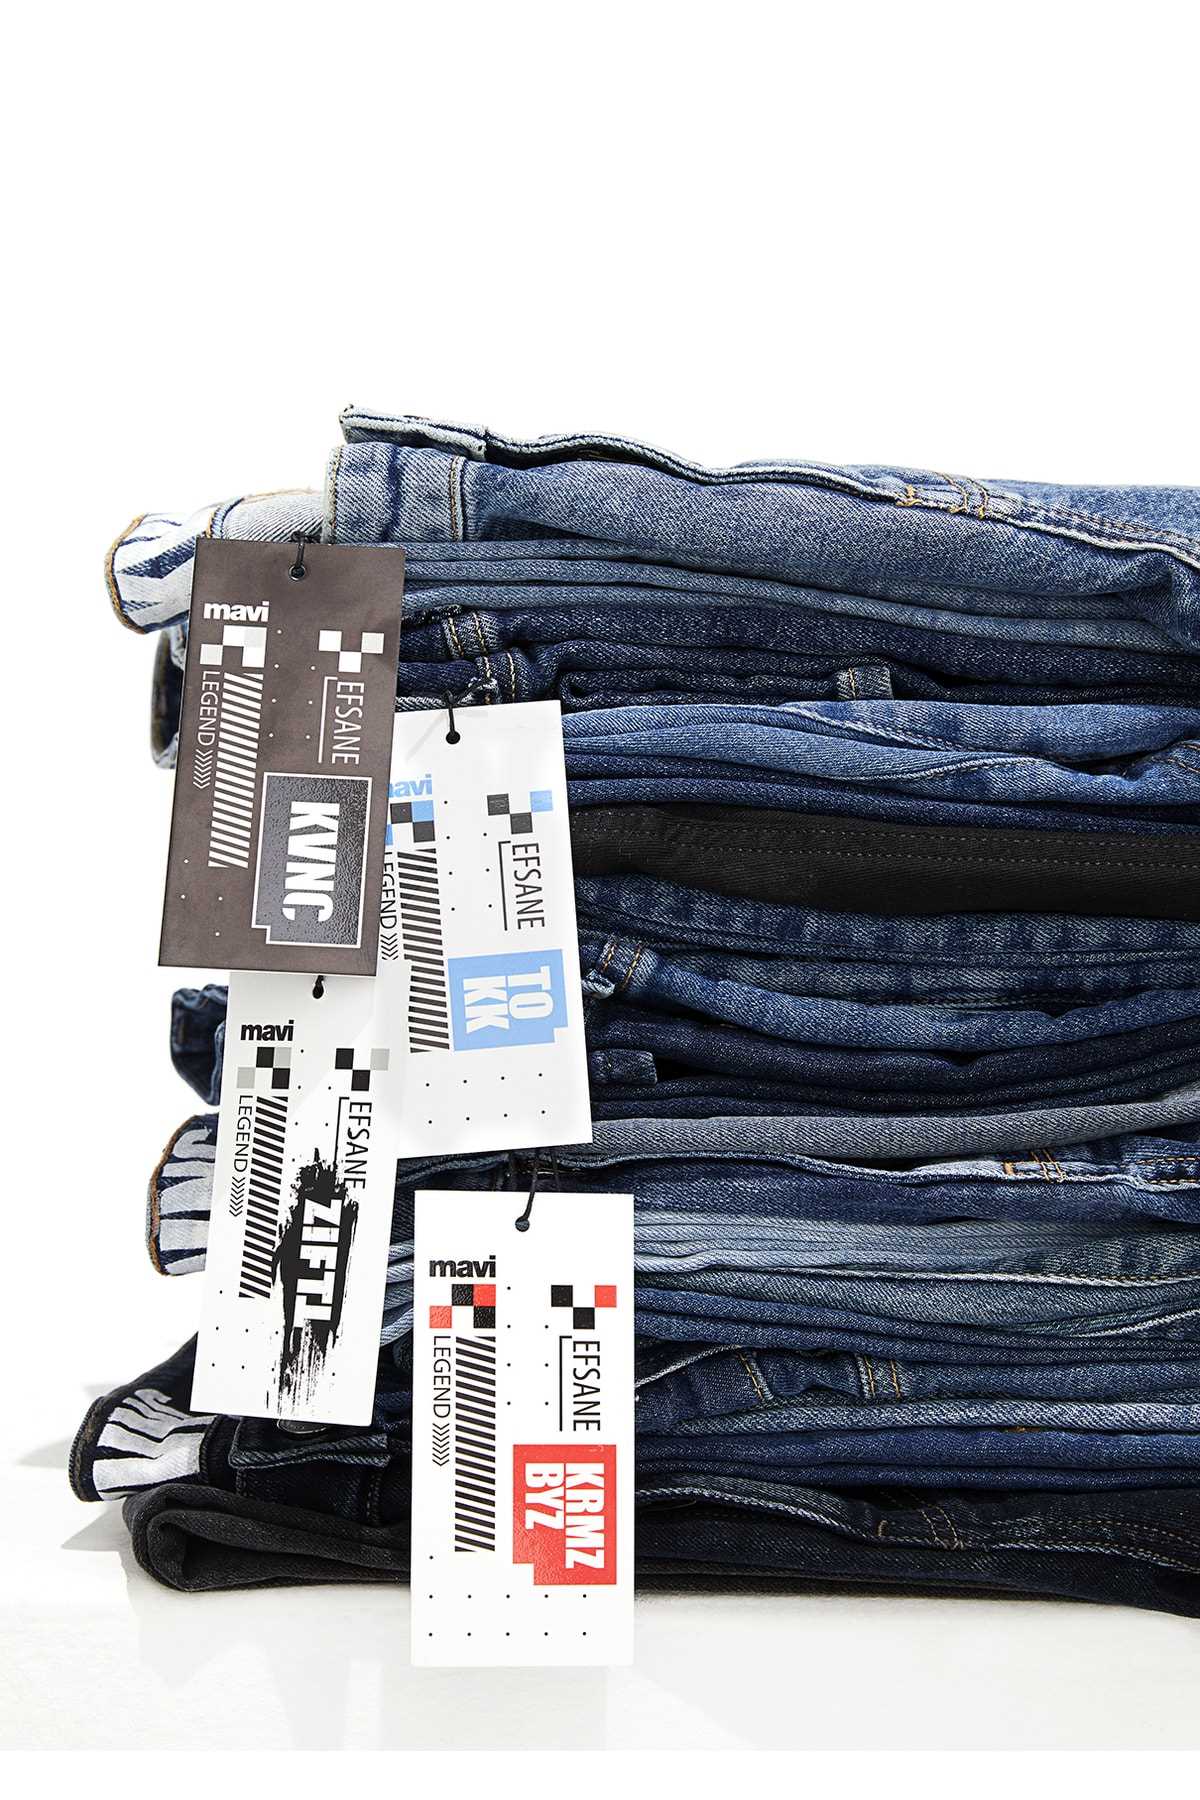 خرید مدل شلوار جین مردانه شیک ماوی Mavi-31957 ty49706410